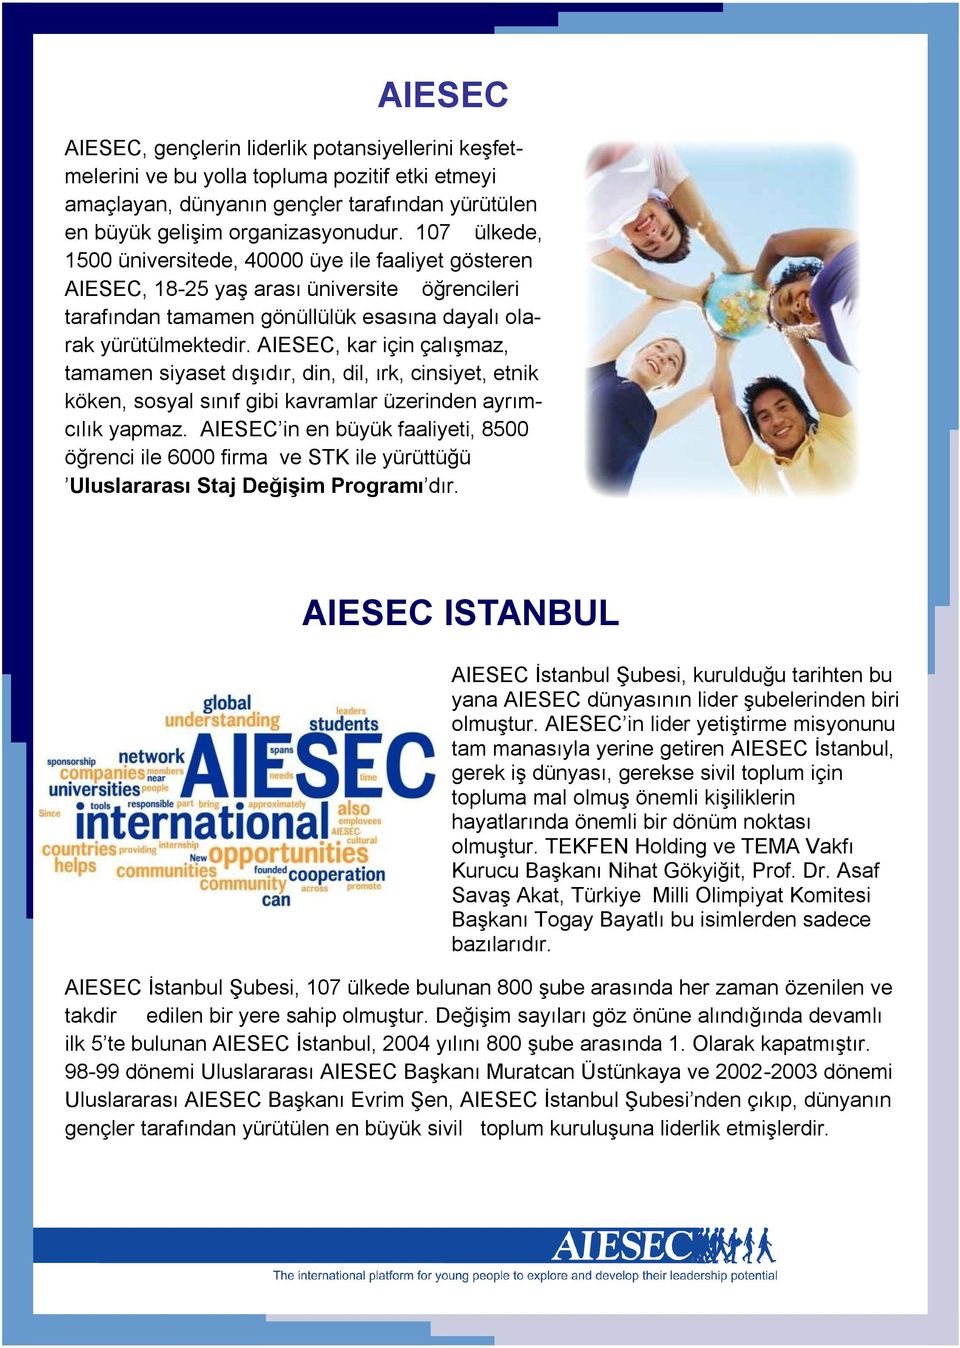 AIESEC, kar için çalışmaz, tamamen siyaset dışıdır, din, dil, ırk, cinsiyet, etnik köken, sosyal sınıf gibi kavramlar üzerinden ayrımcılık yapmaz.